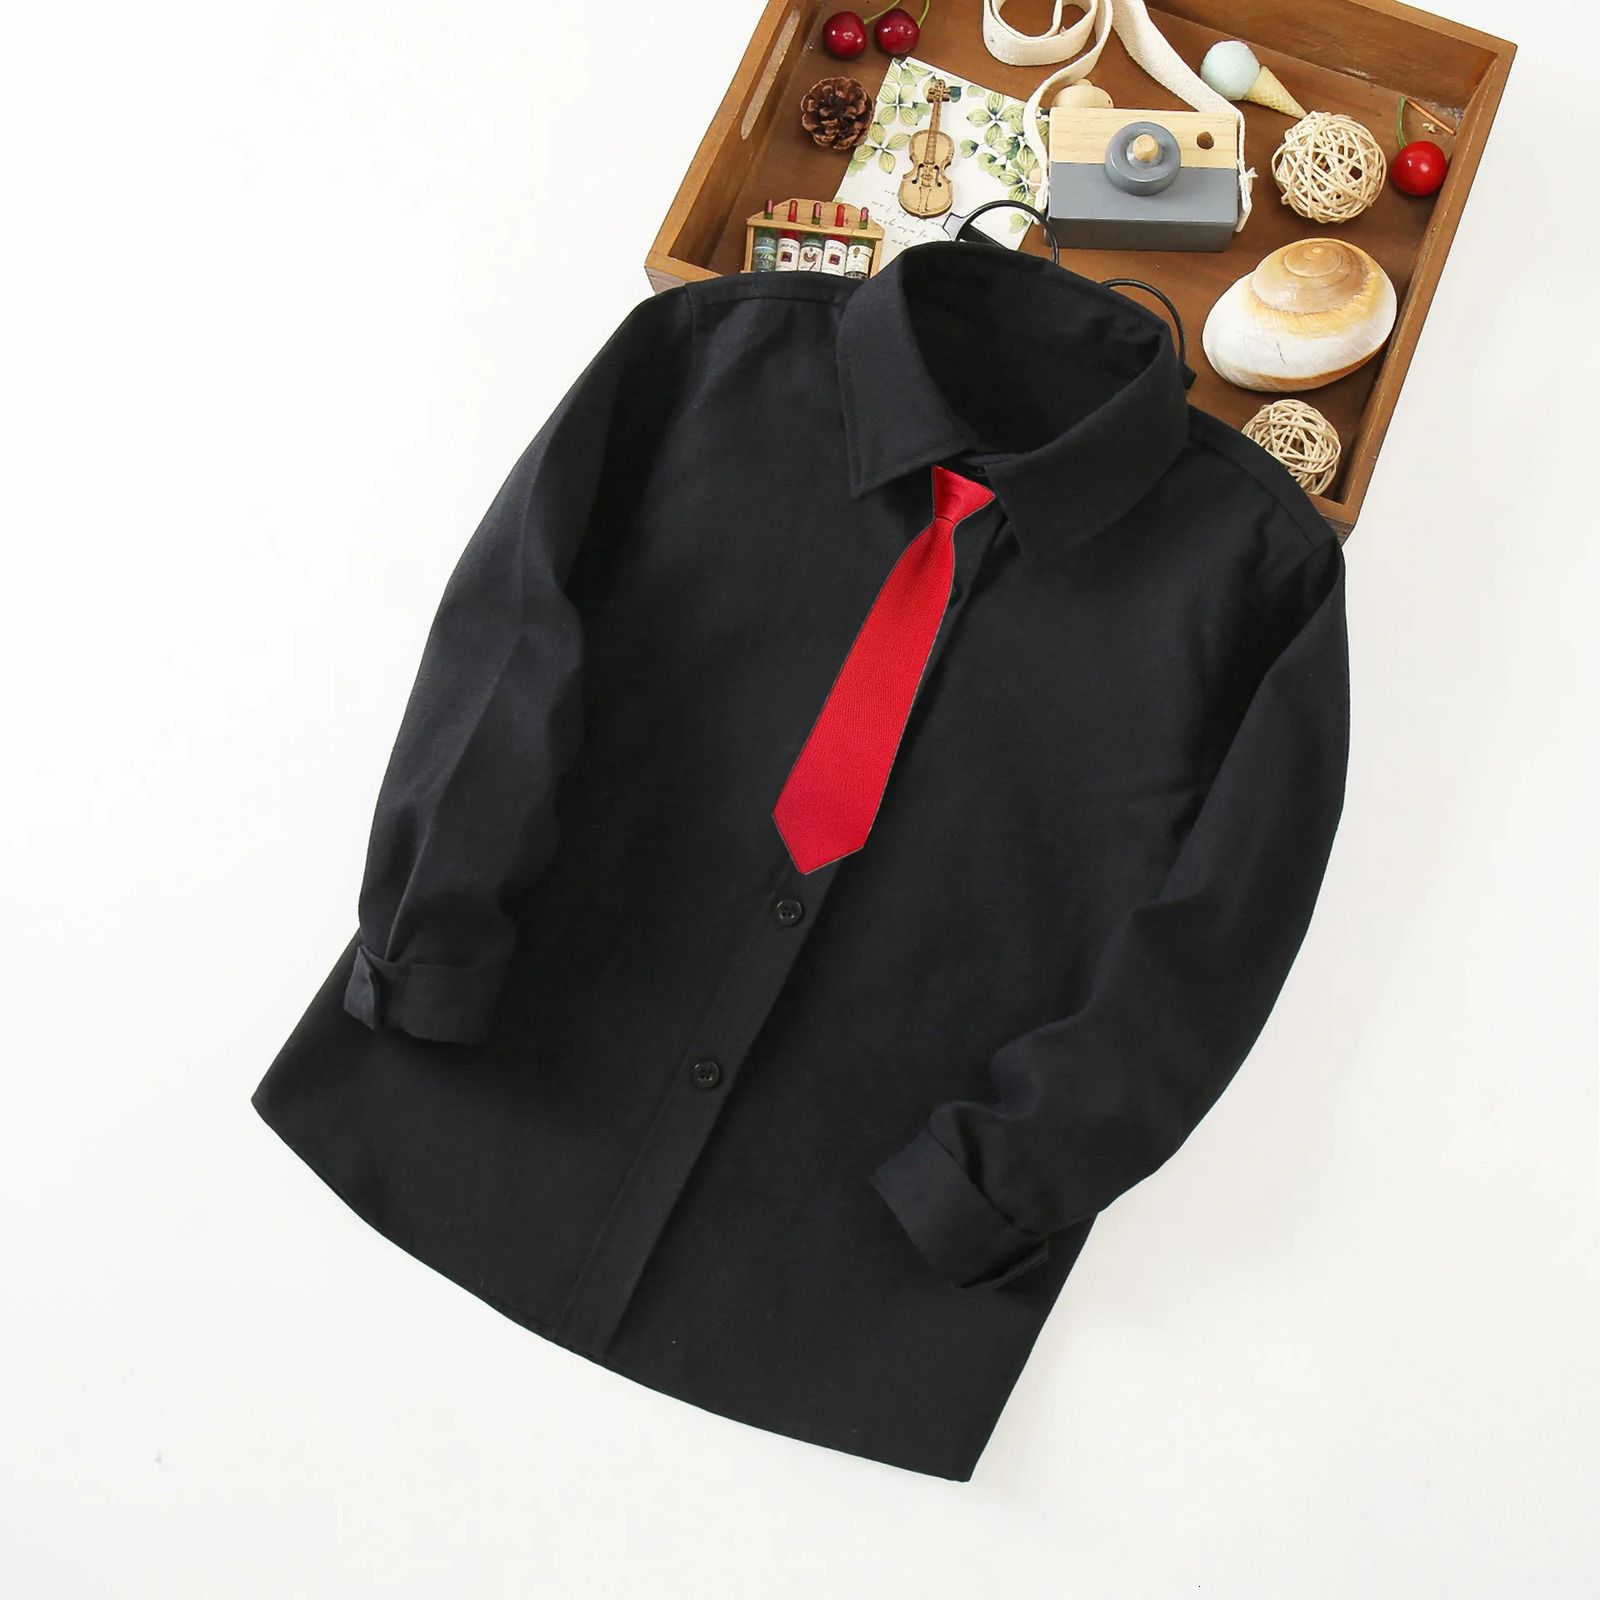 Zwarte top rode stropdas